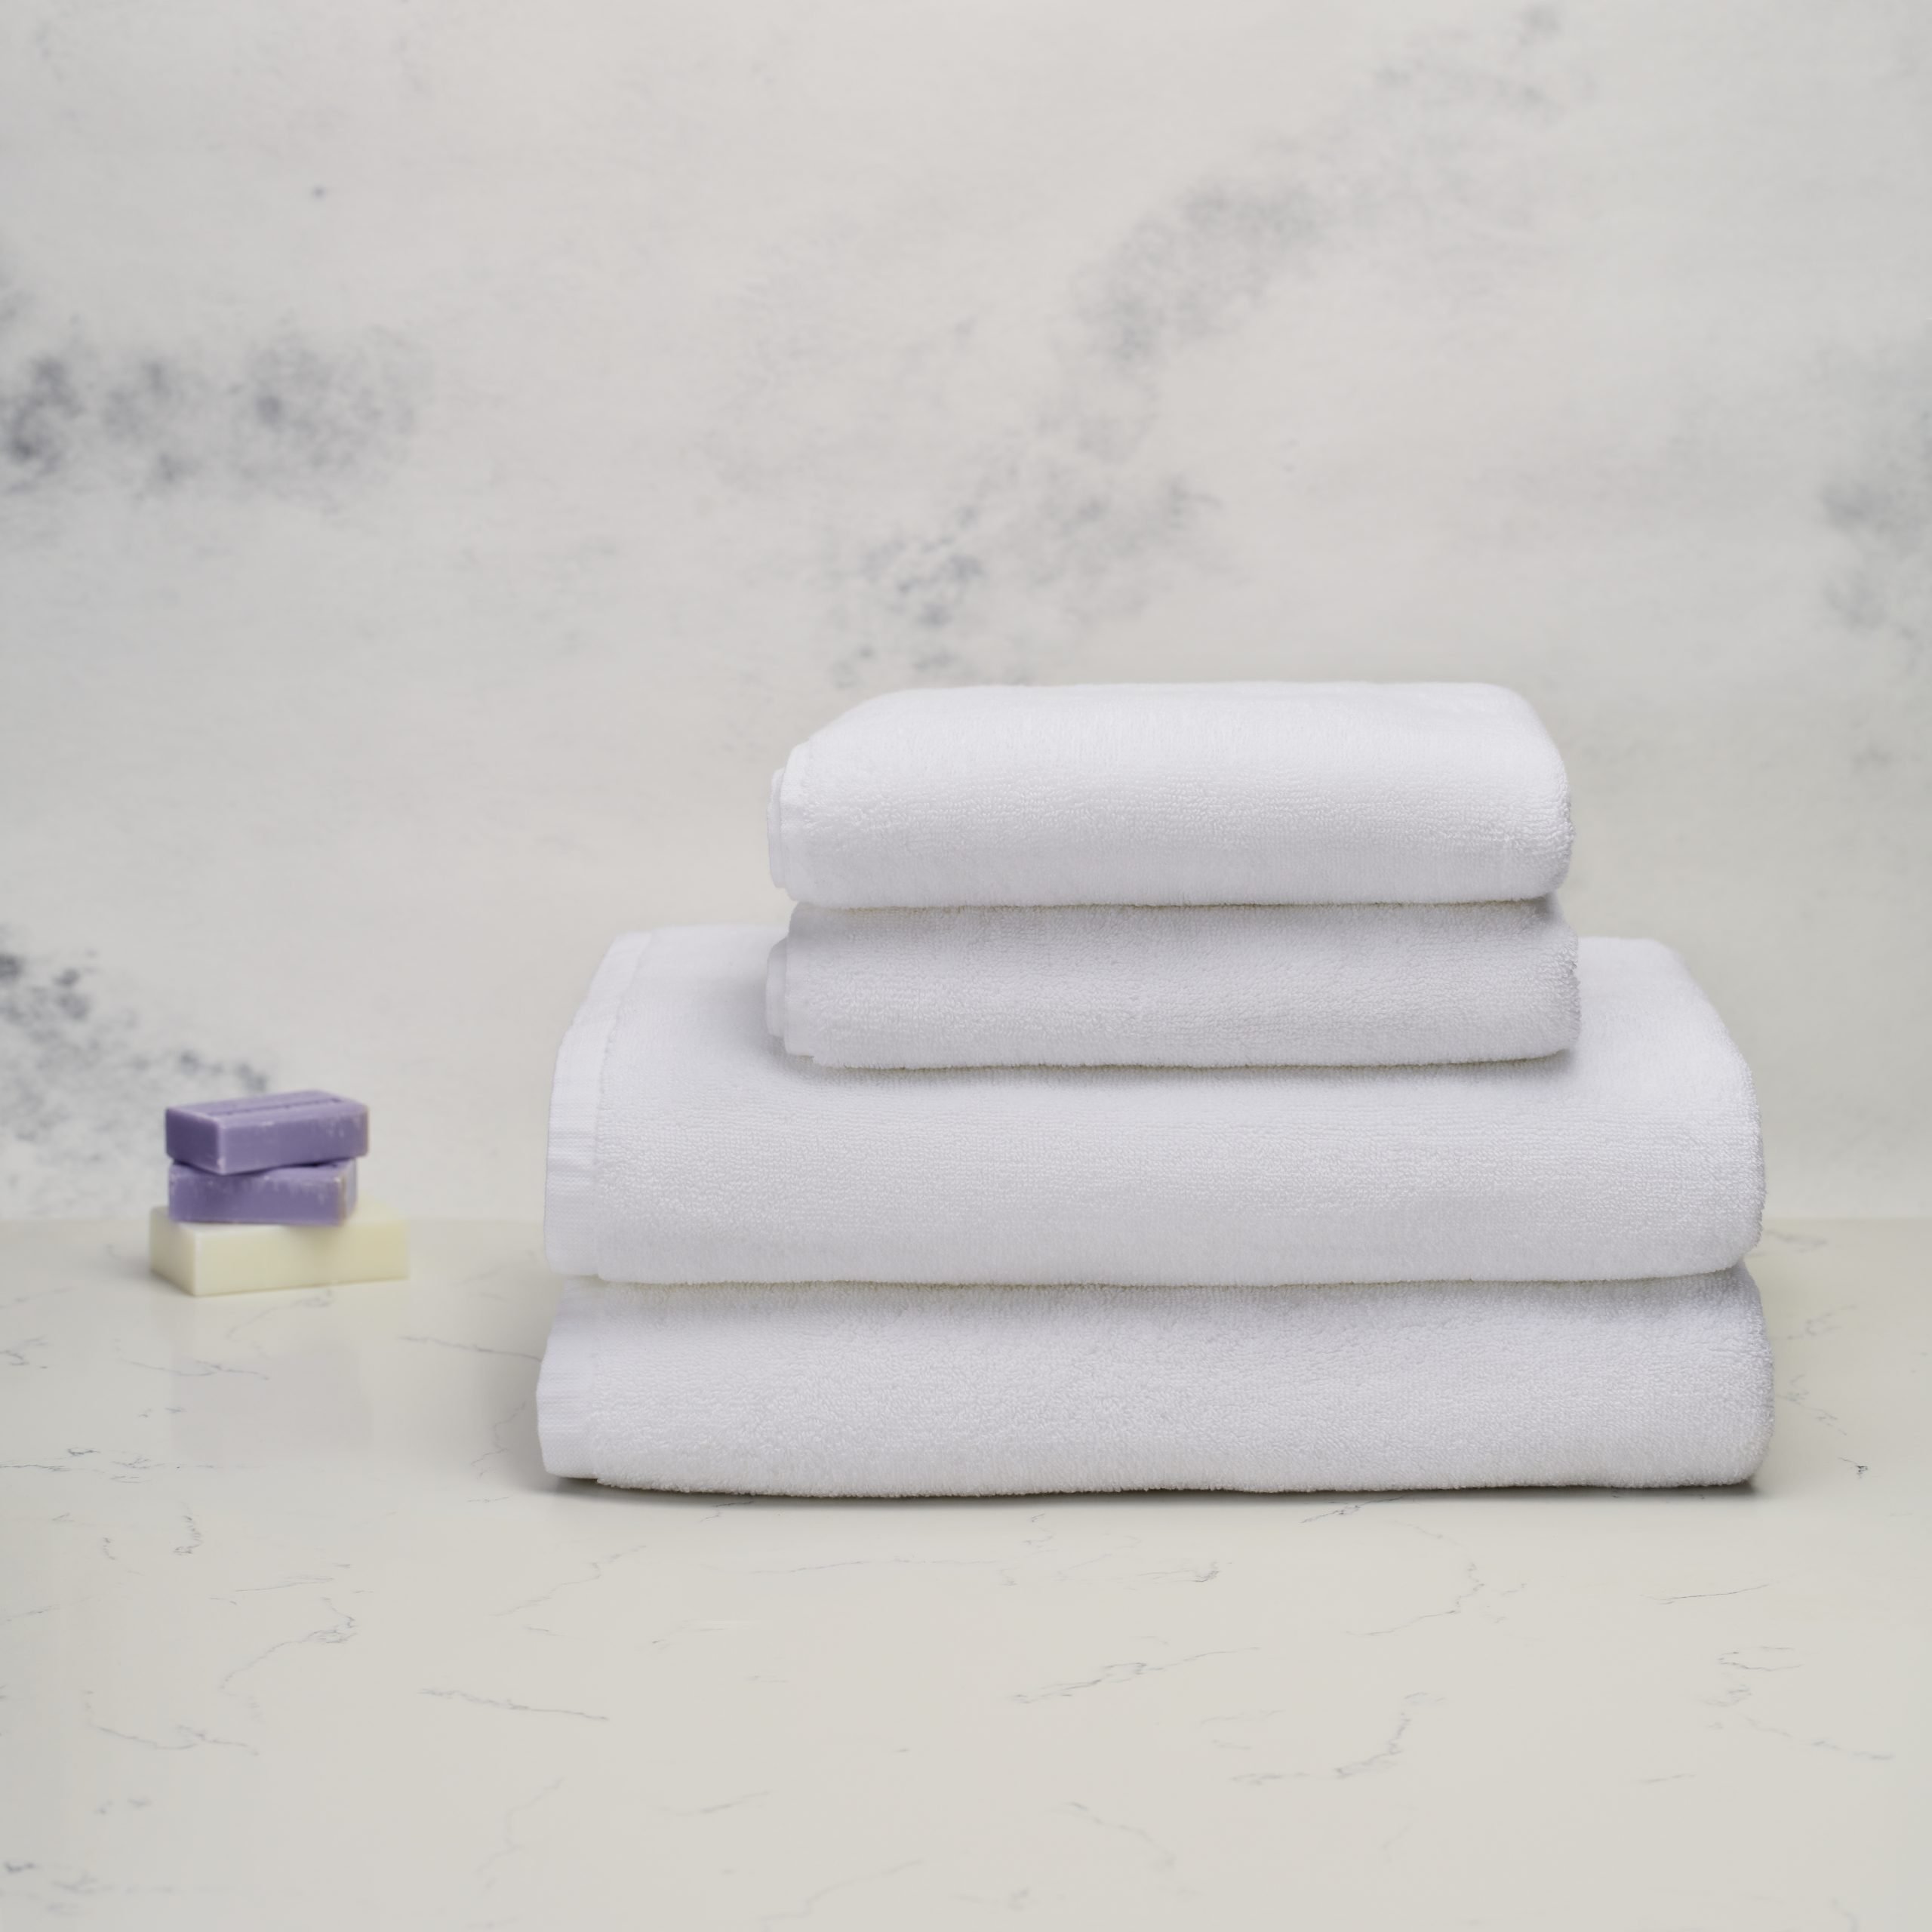 Set Luxury 2 toallones baño y 2 toallas mano, 100% algodón egipcio, 600  gr/m2